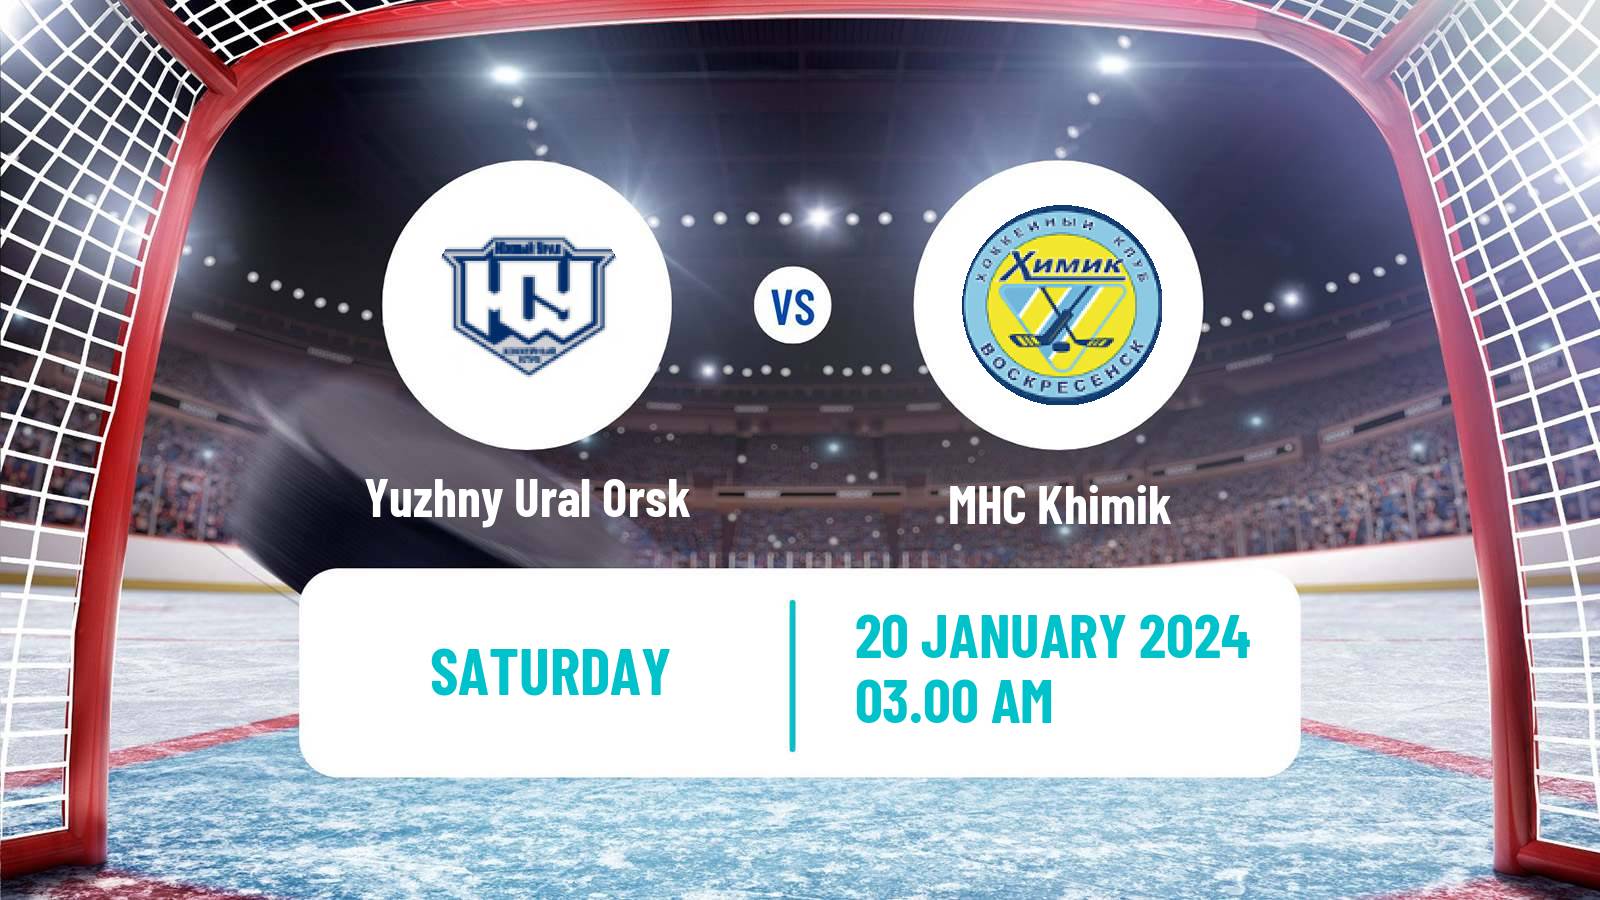 Hockey VHL Yuzhny Ural Orsk - Khimik